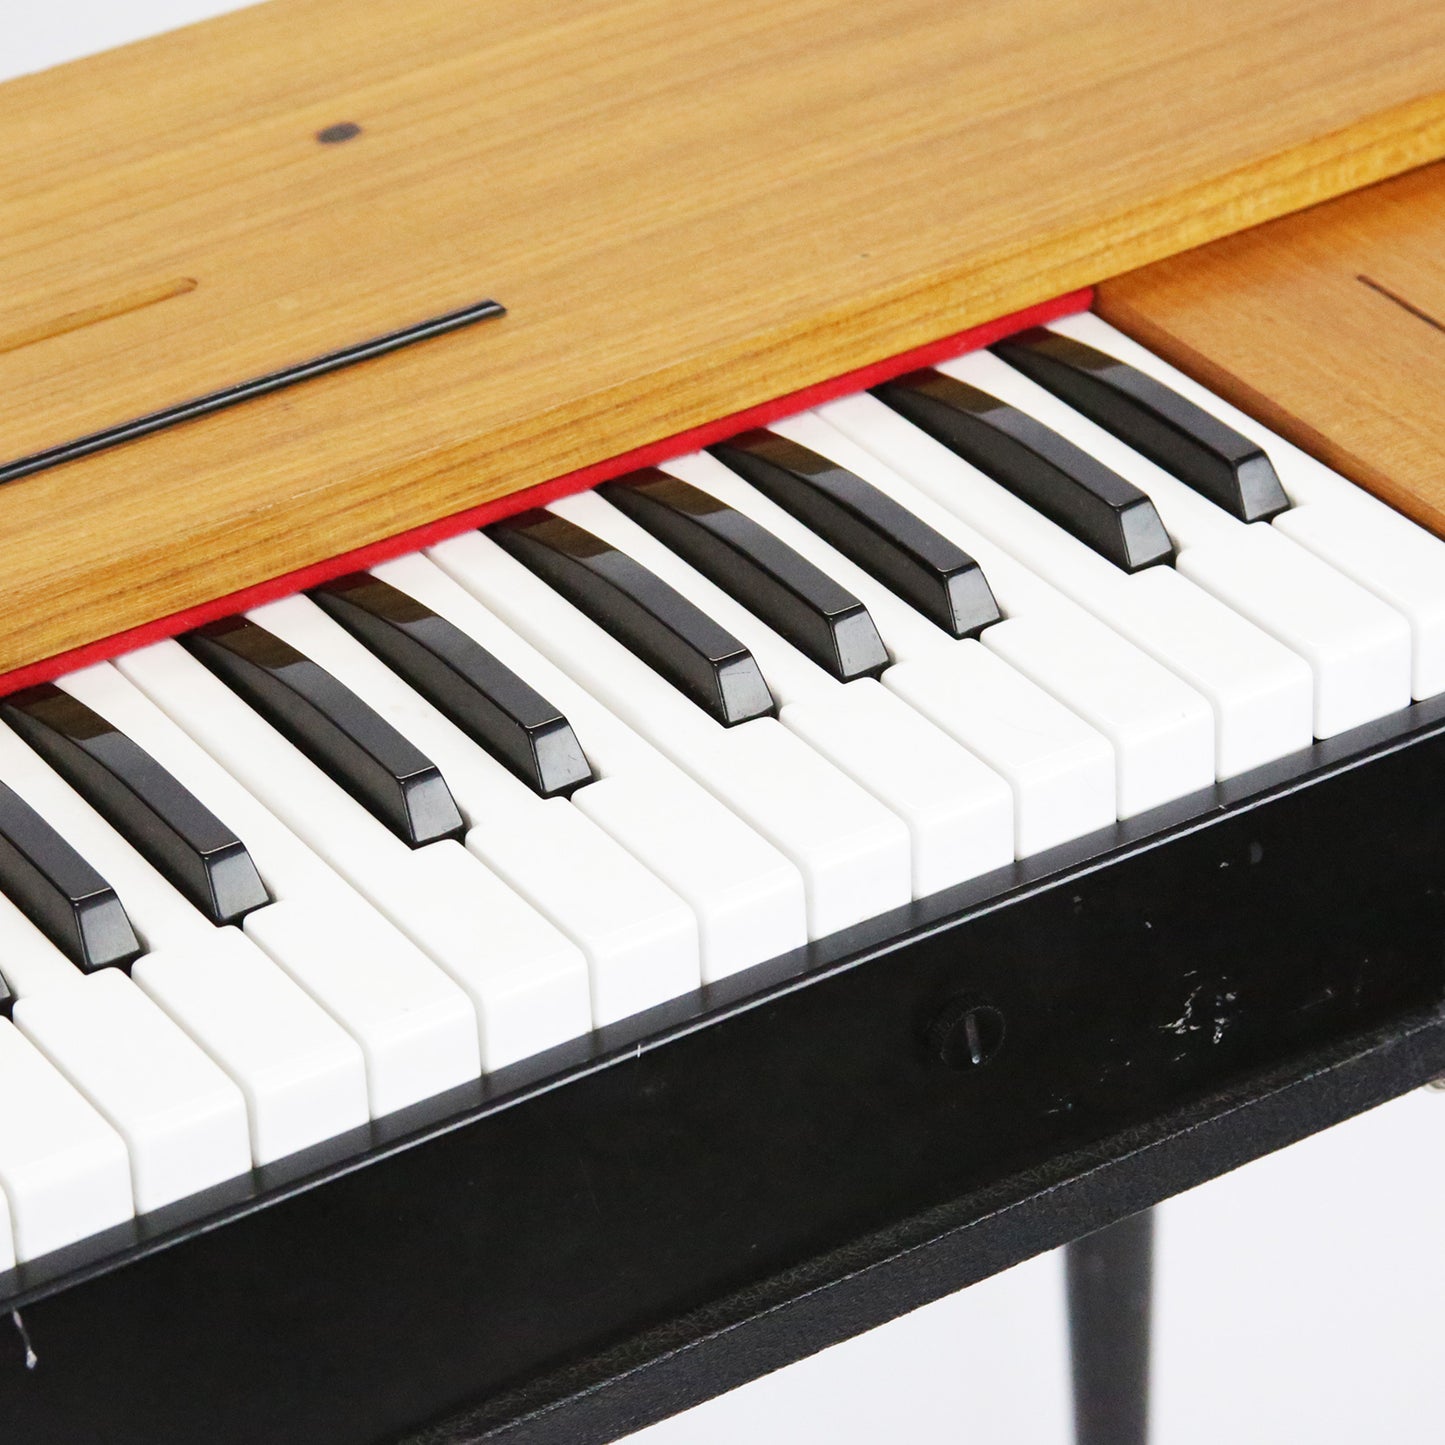 1979 Hohner D6 Clavinet Keyboard - 100% Original Vintage Example